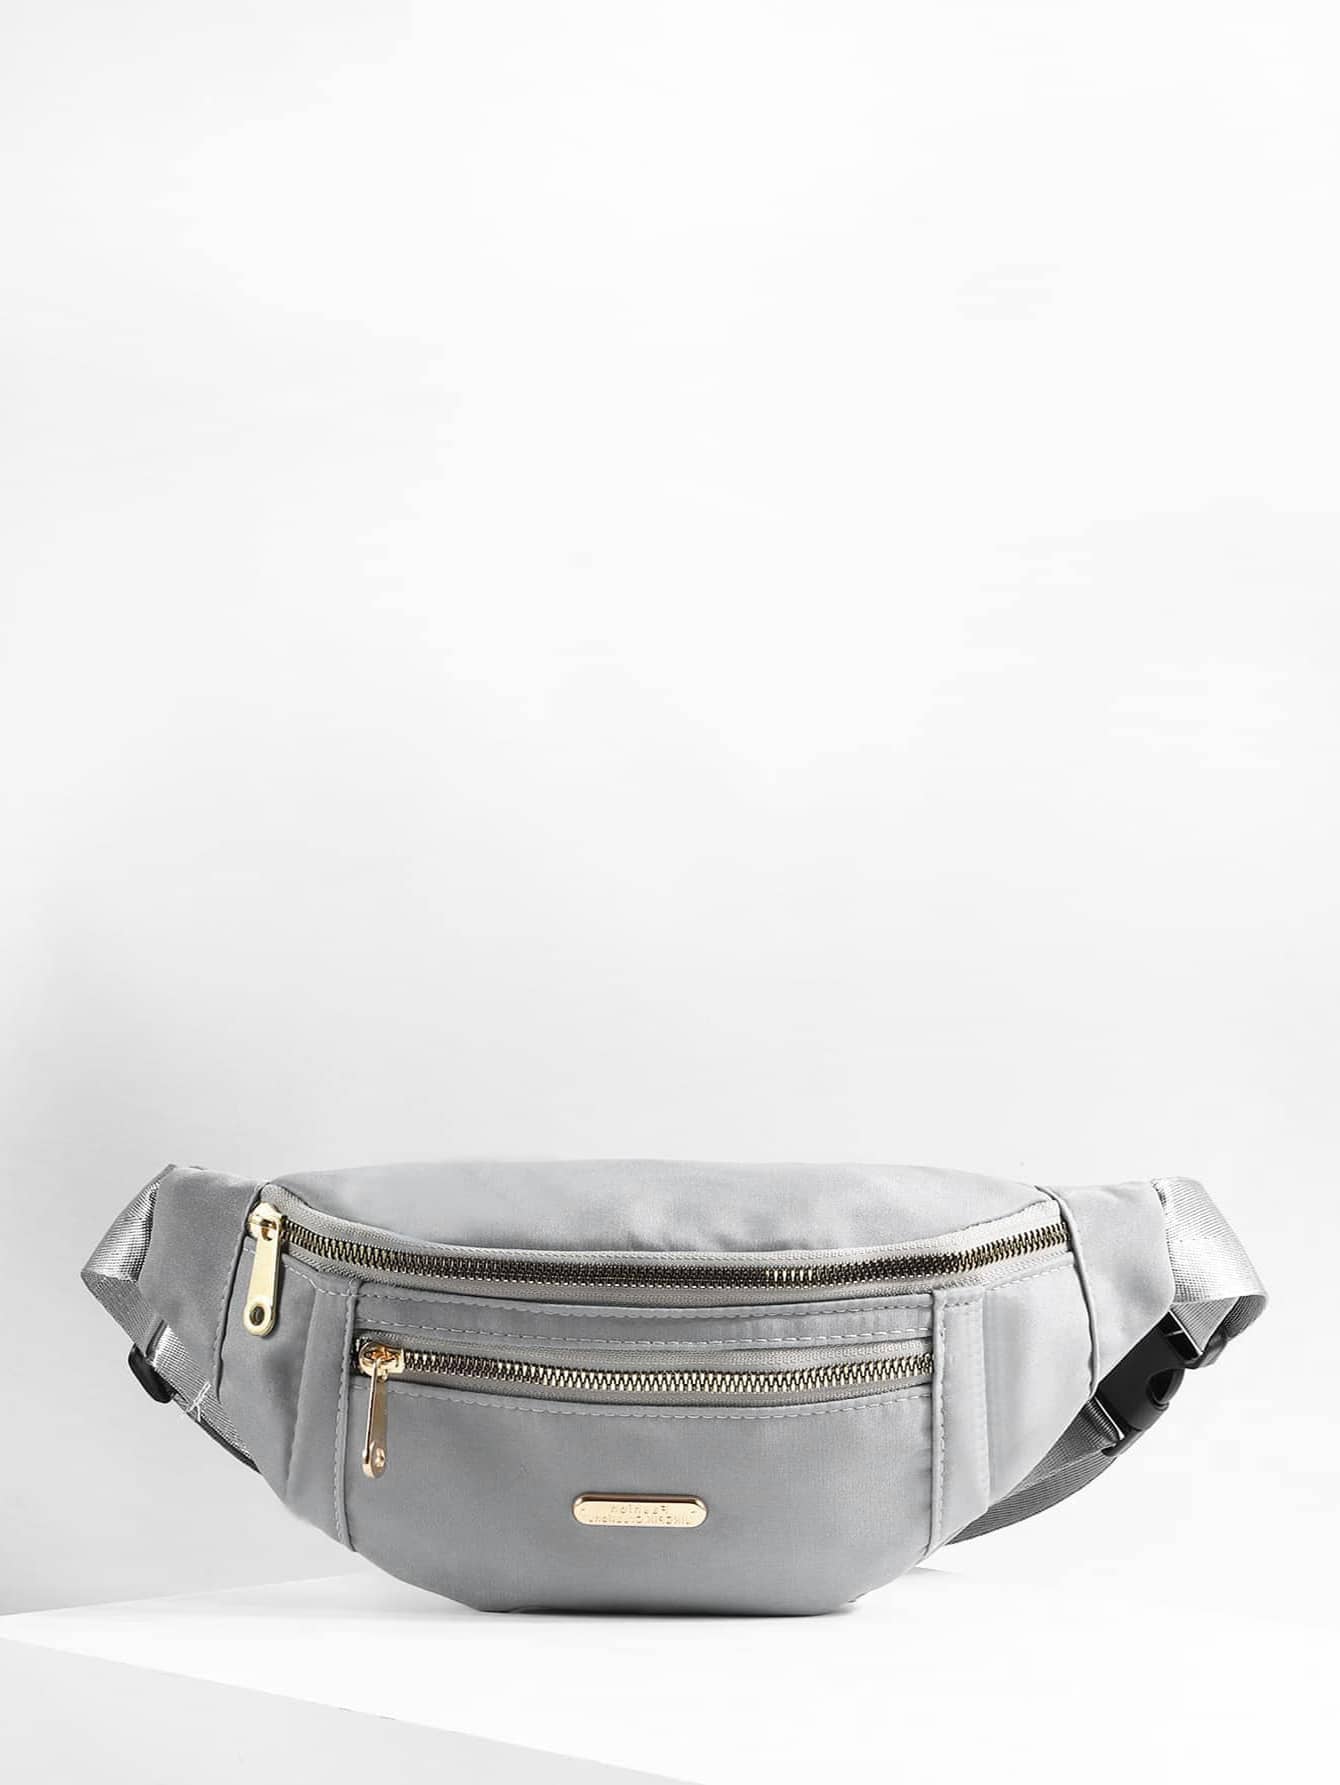 Поясная сумка с металлическим декором и пряжкой, серый поясная сумка с пряжкой и декором черный